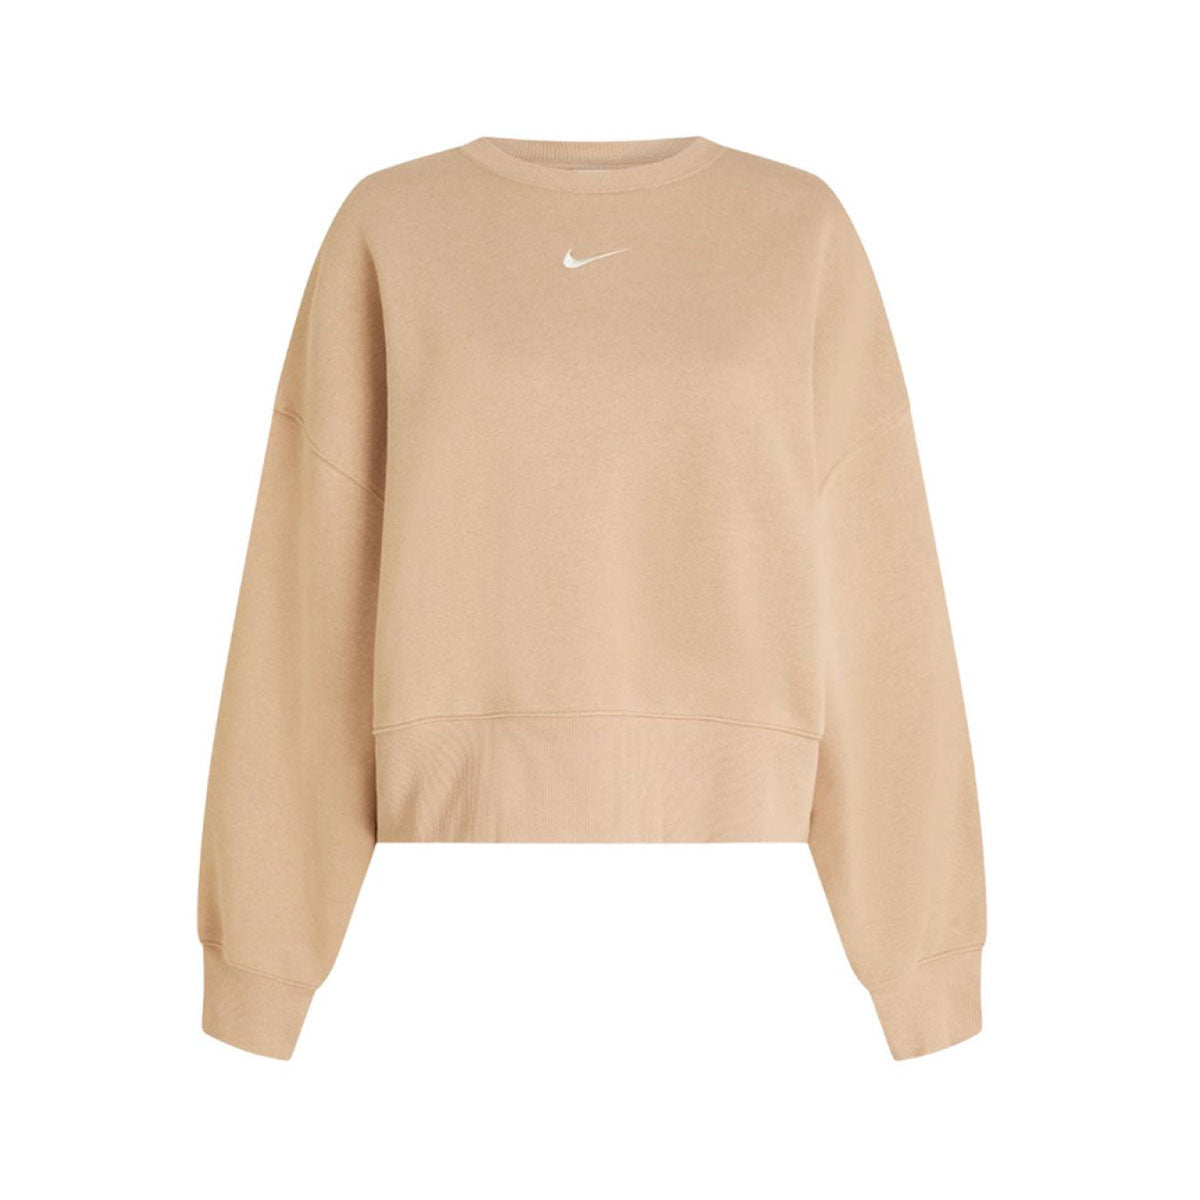 Nike Women's Fleece Oversized Crewneck Sweatshirt